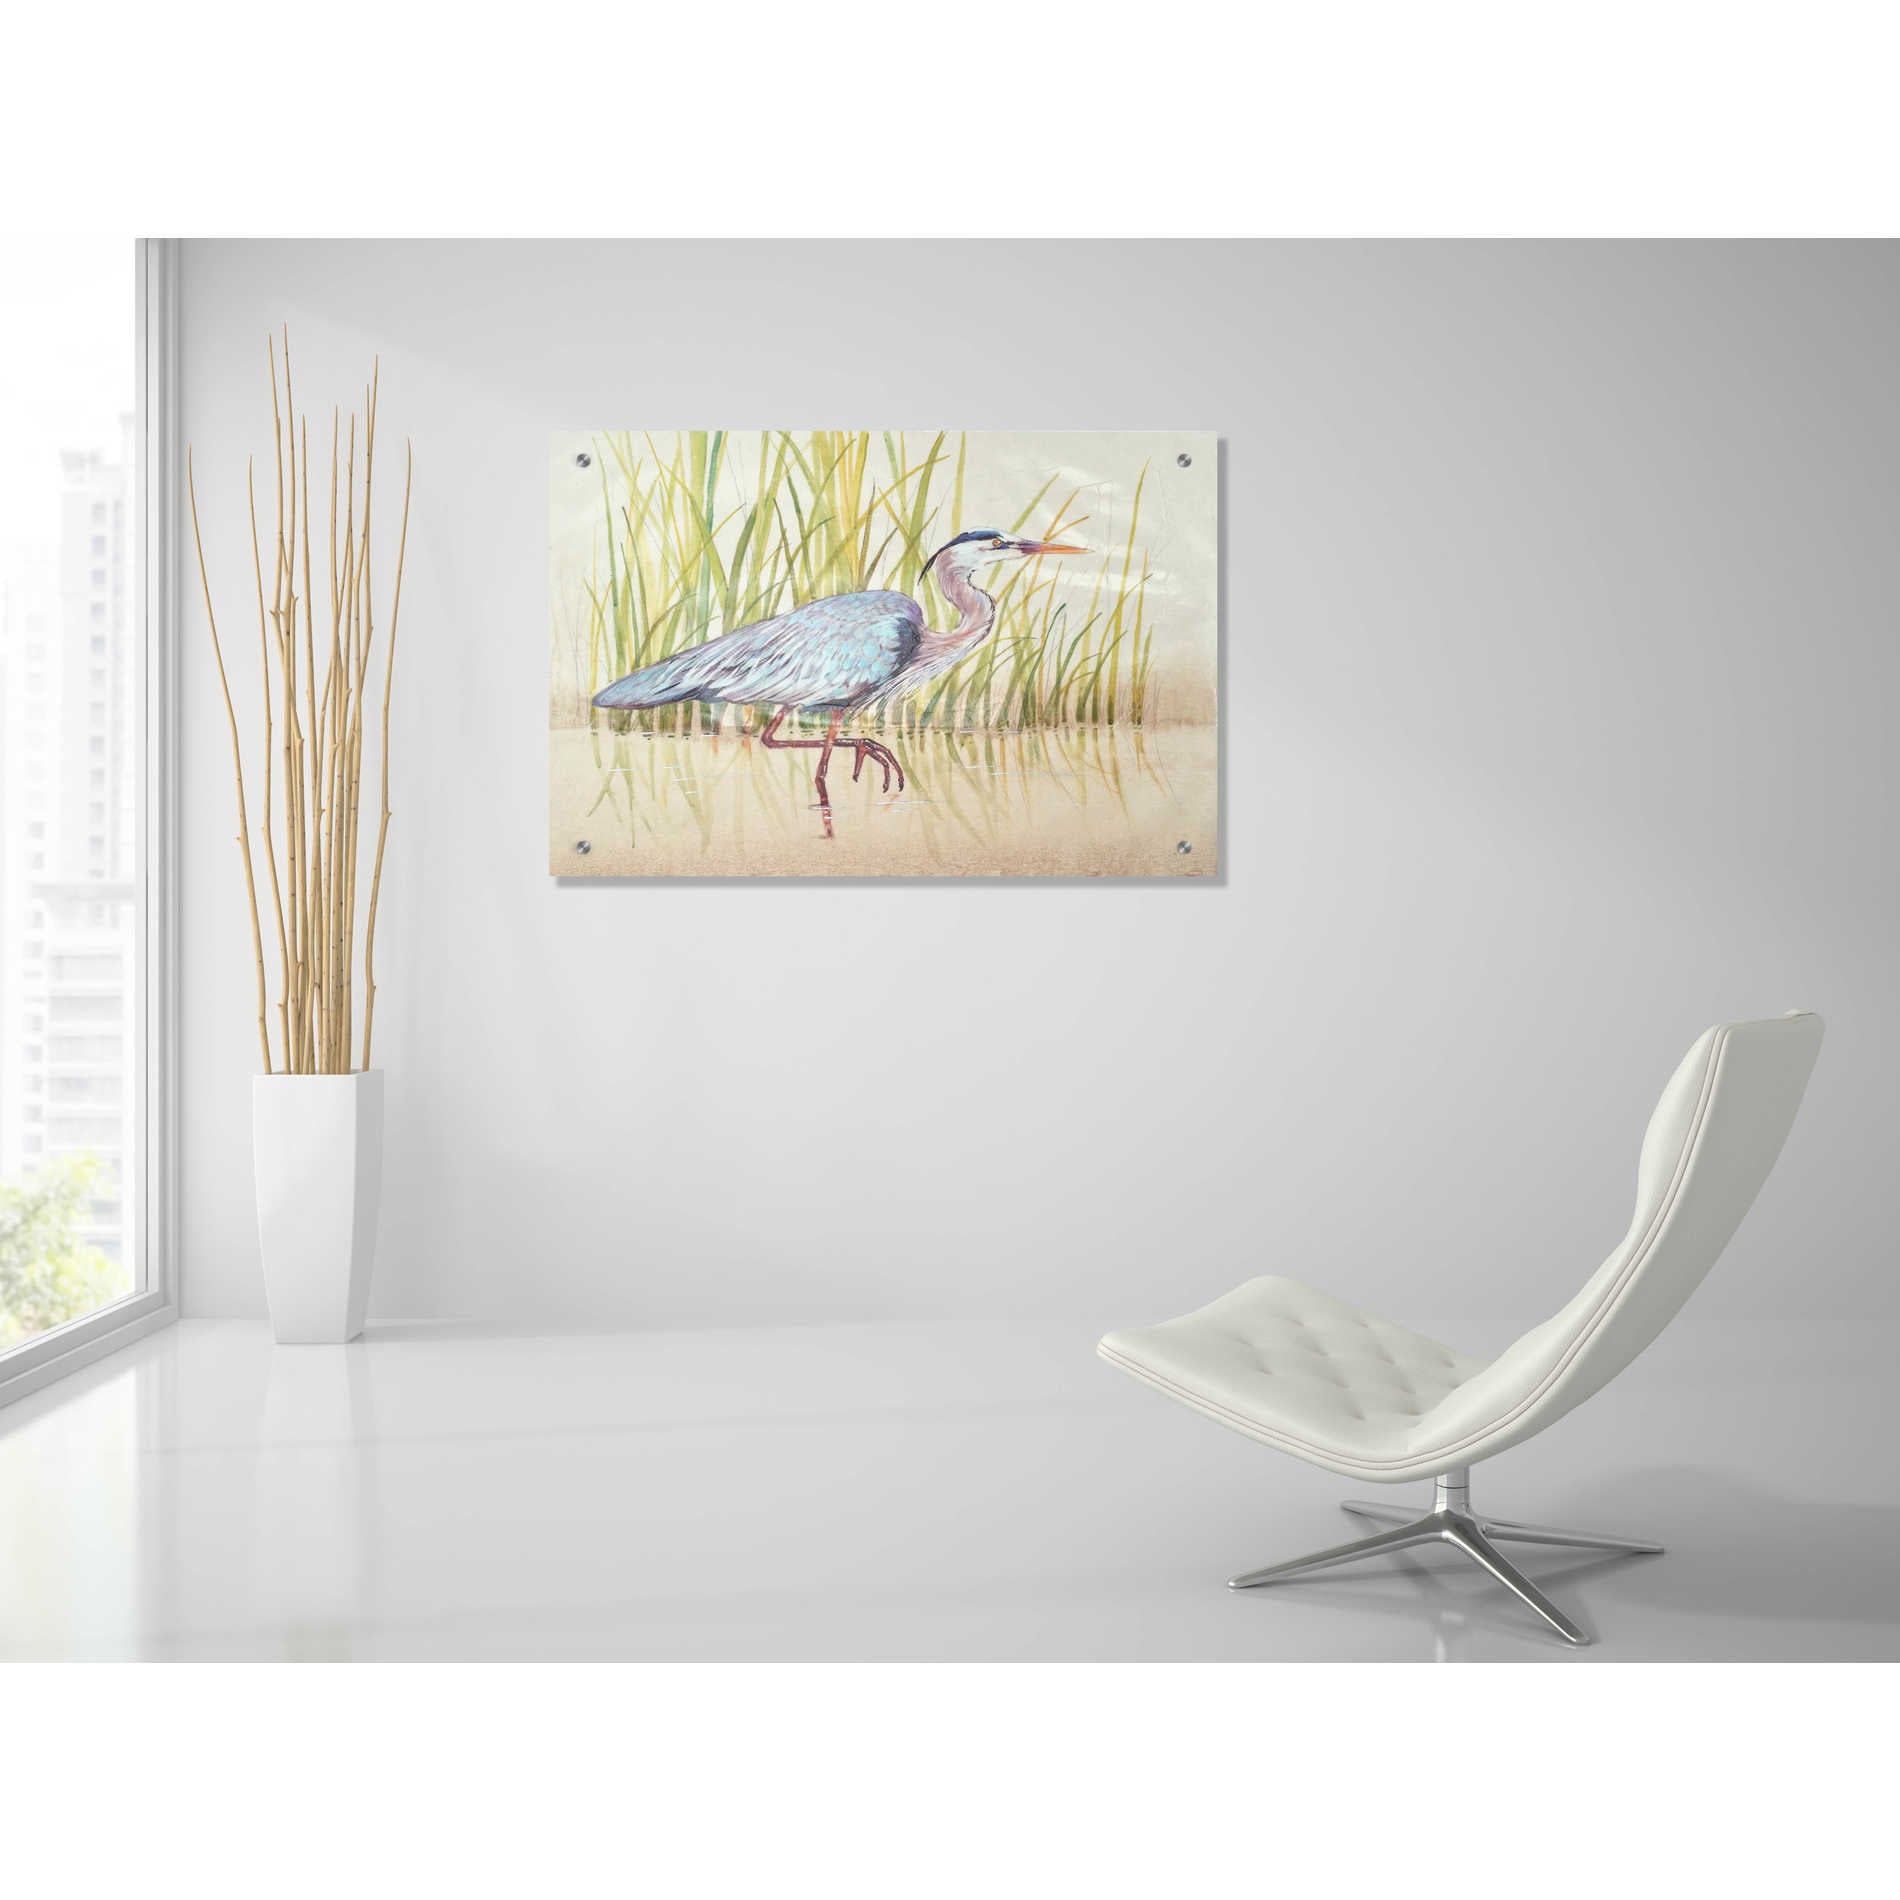 Epic Art 'Heron & Reeds I' by Tim O'Toole, Acrylic Glass Wall Art,36x24